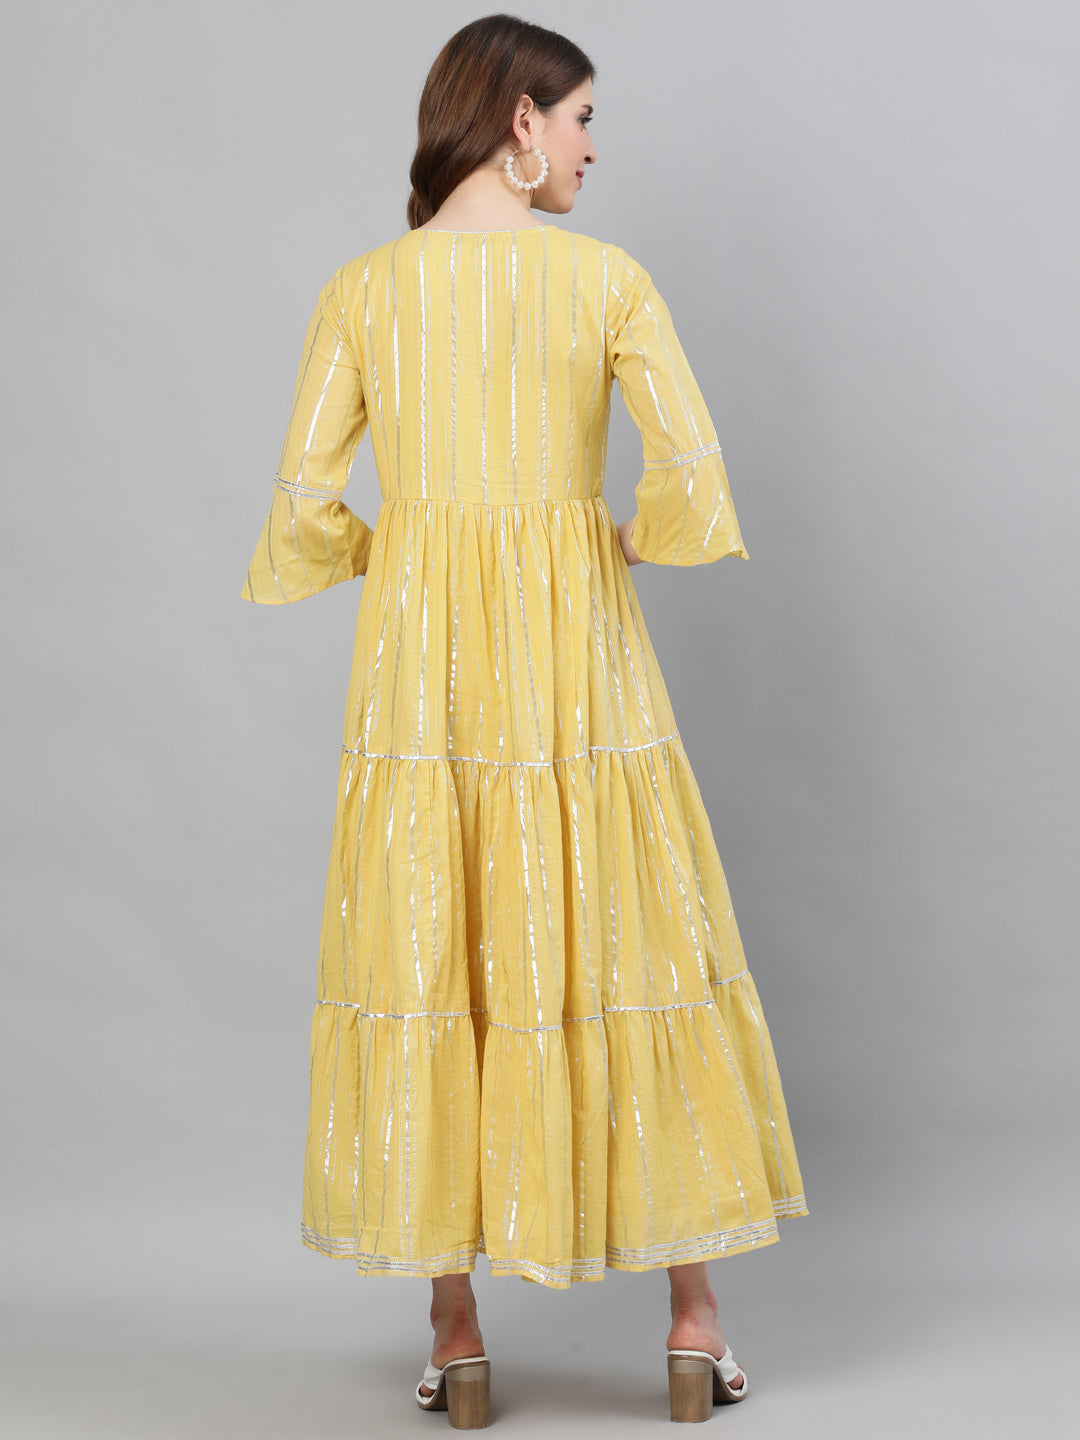 Ishin Women's Lurex Cotton Yellow Embroidered Anarkali Kurta